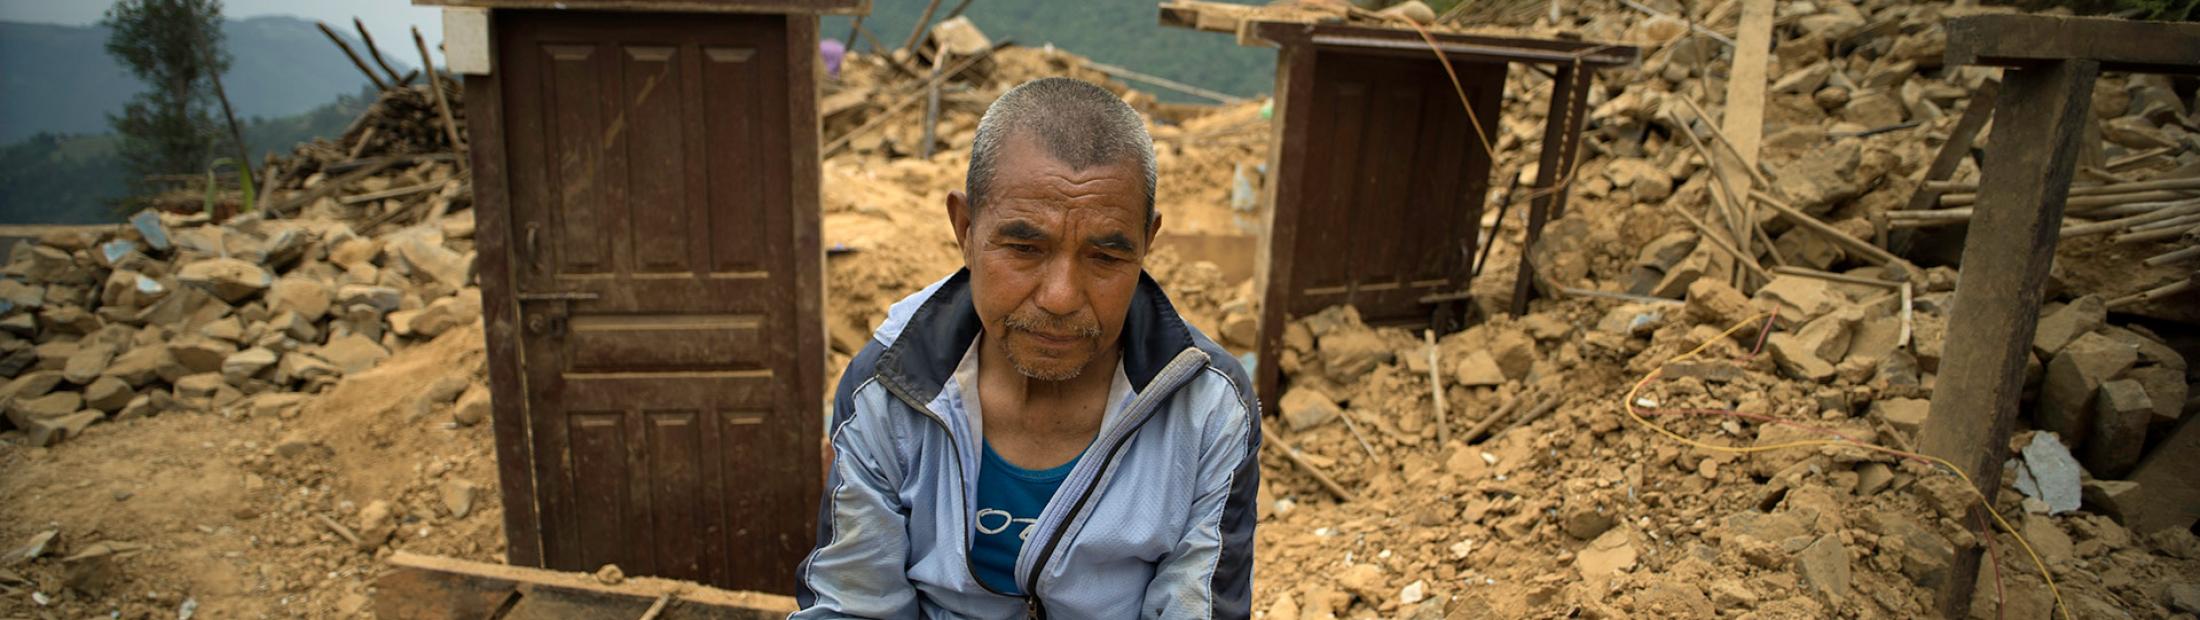 Tragedia en Nepal: el terremoto que se llevó todo